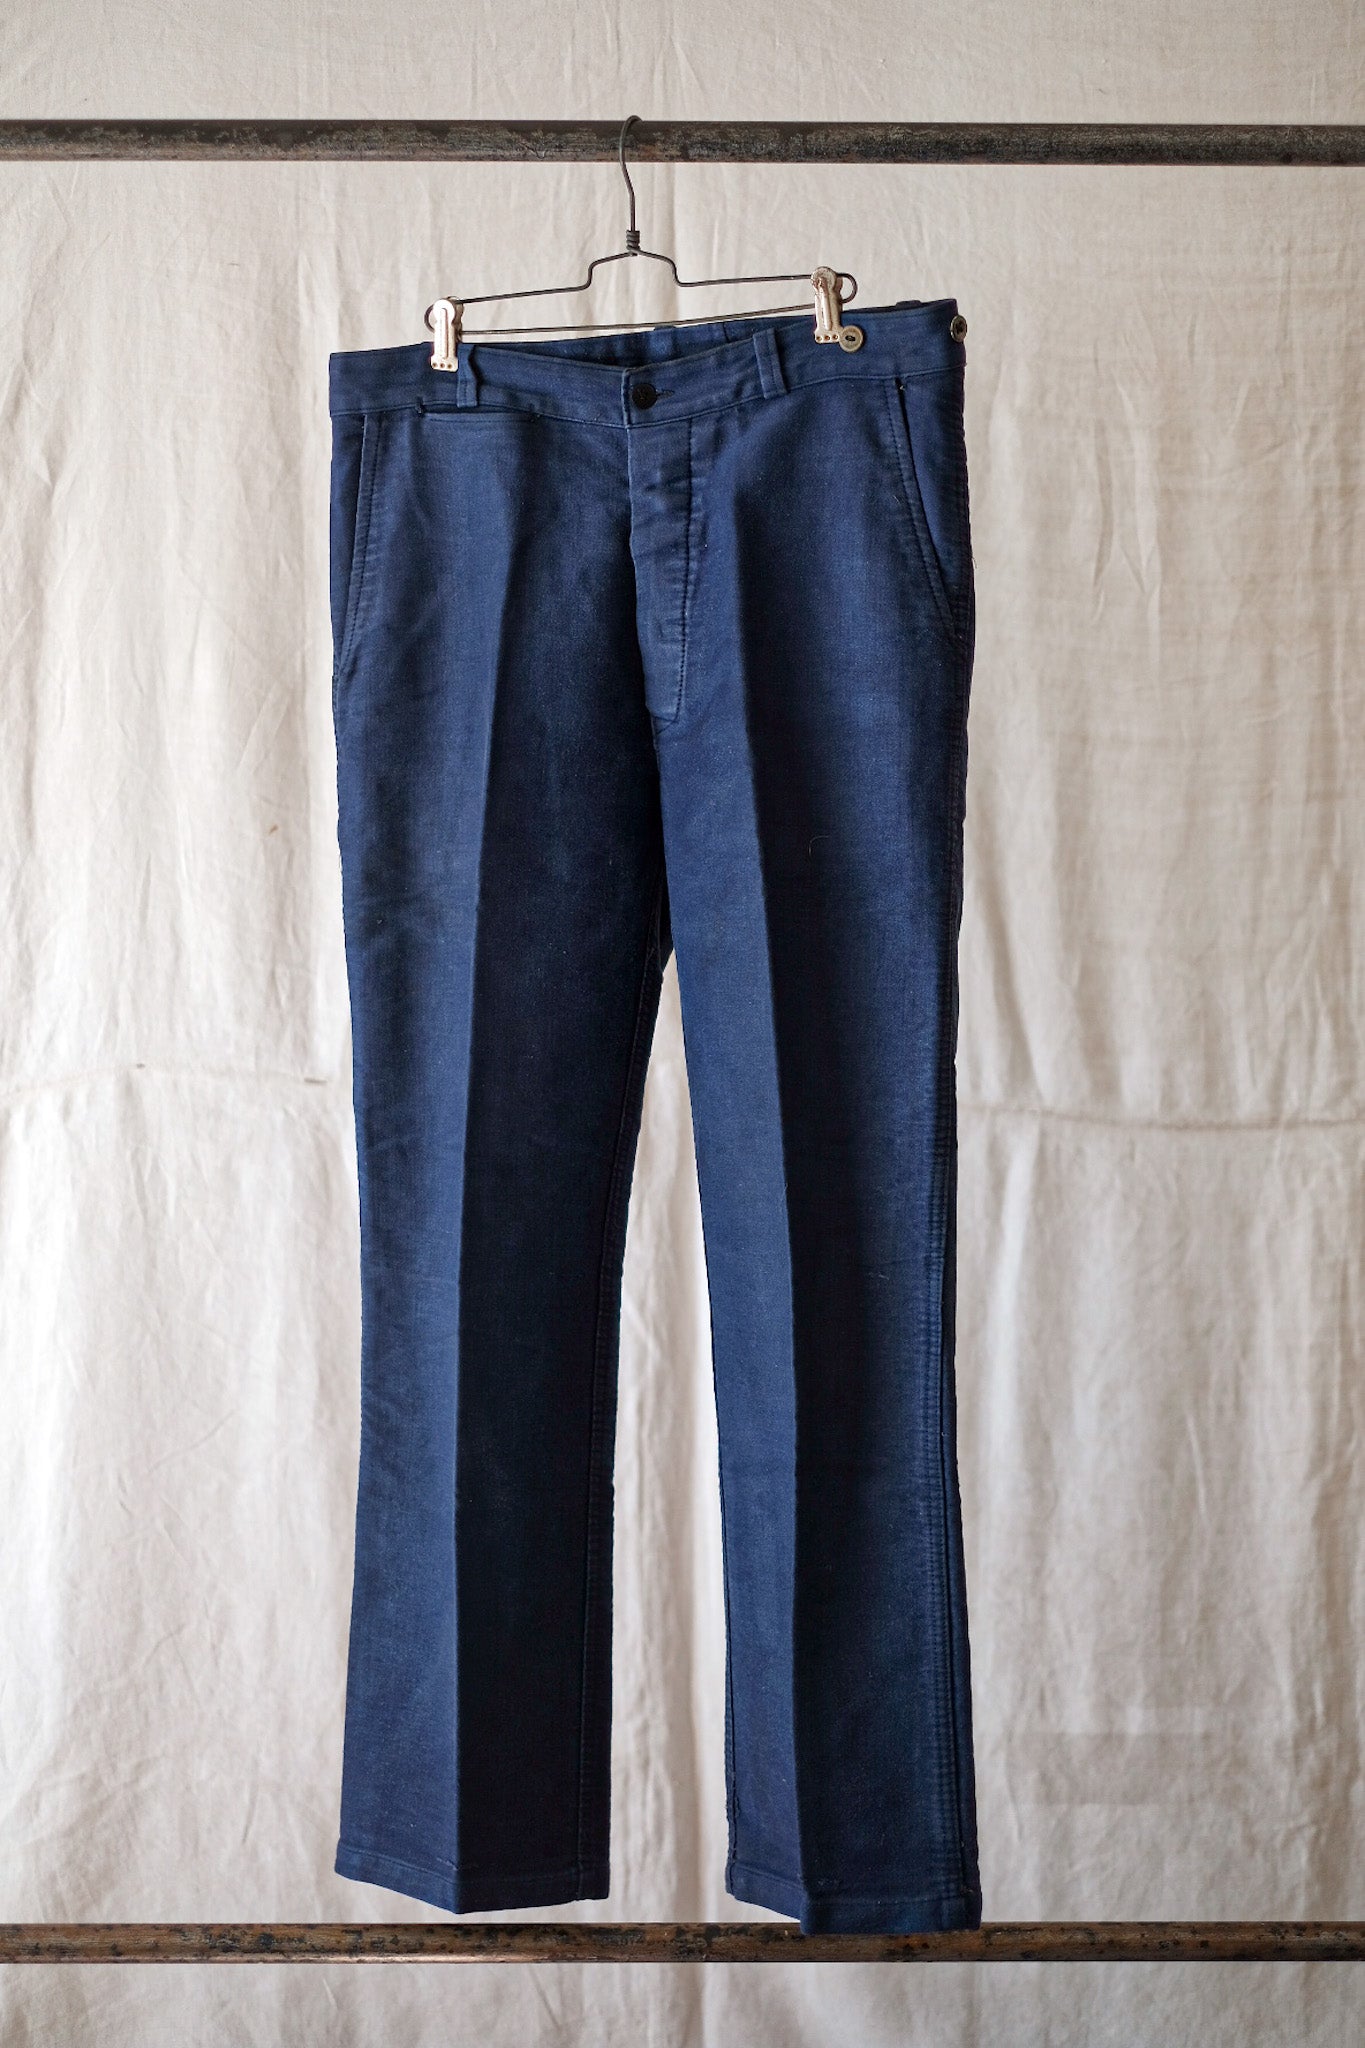 [~ 50's] กางเกงตัวโมล็อตสีฟ้าวินเทจฝรั่งเศส